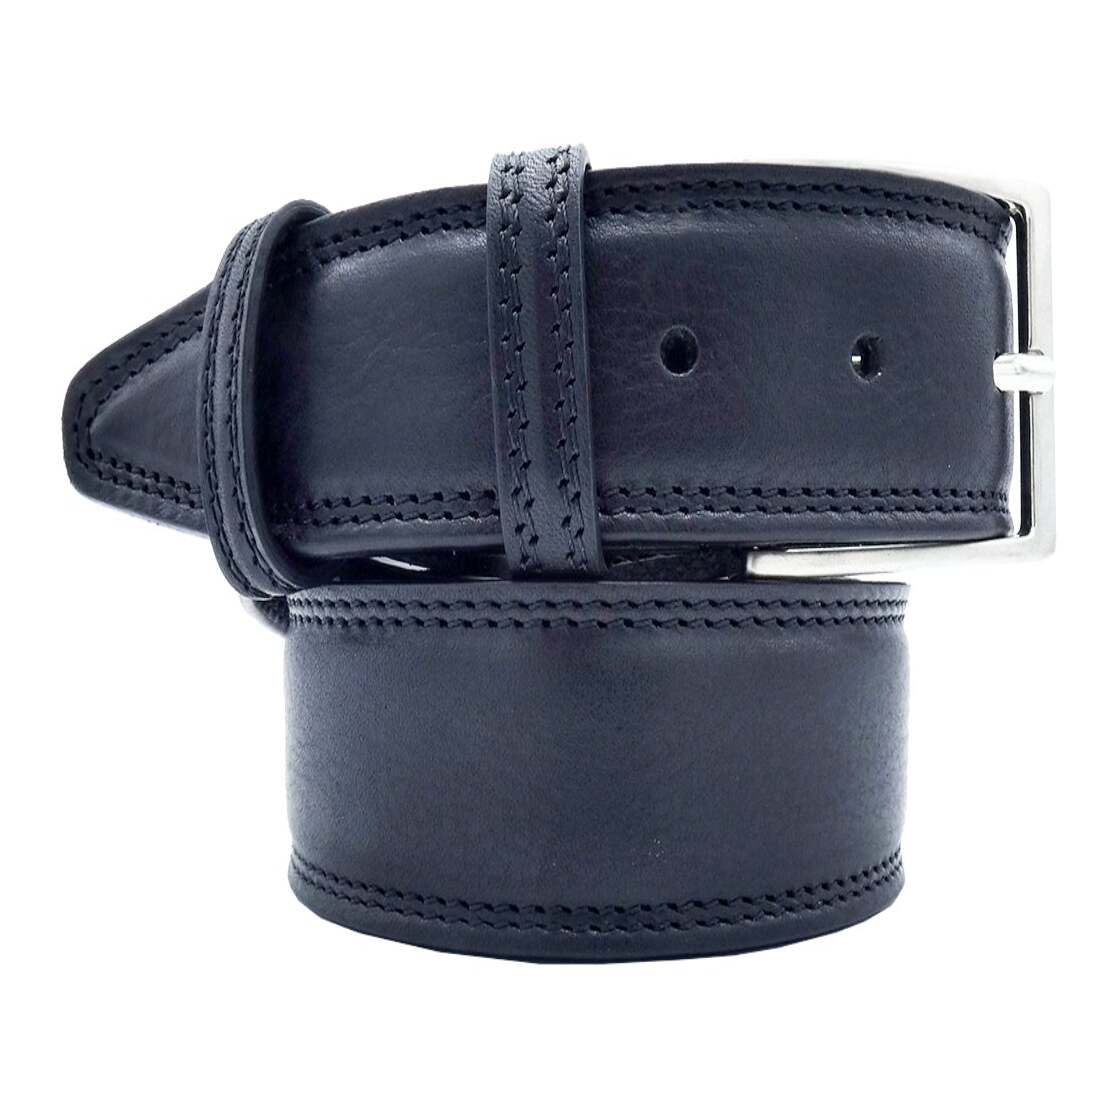 Cinturón capri de piel con doble vuelta y hebilla artesanal de zamak satinada